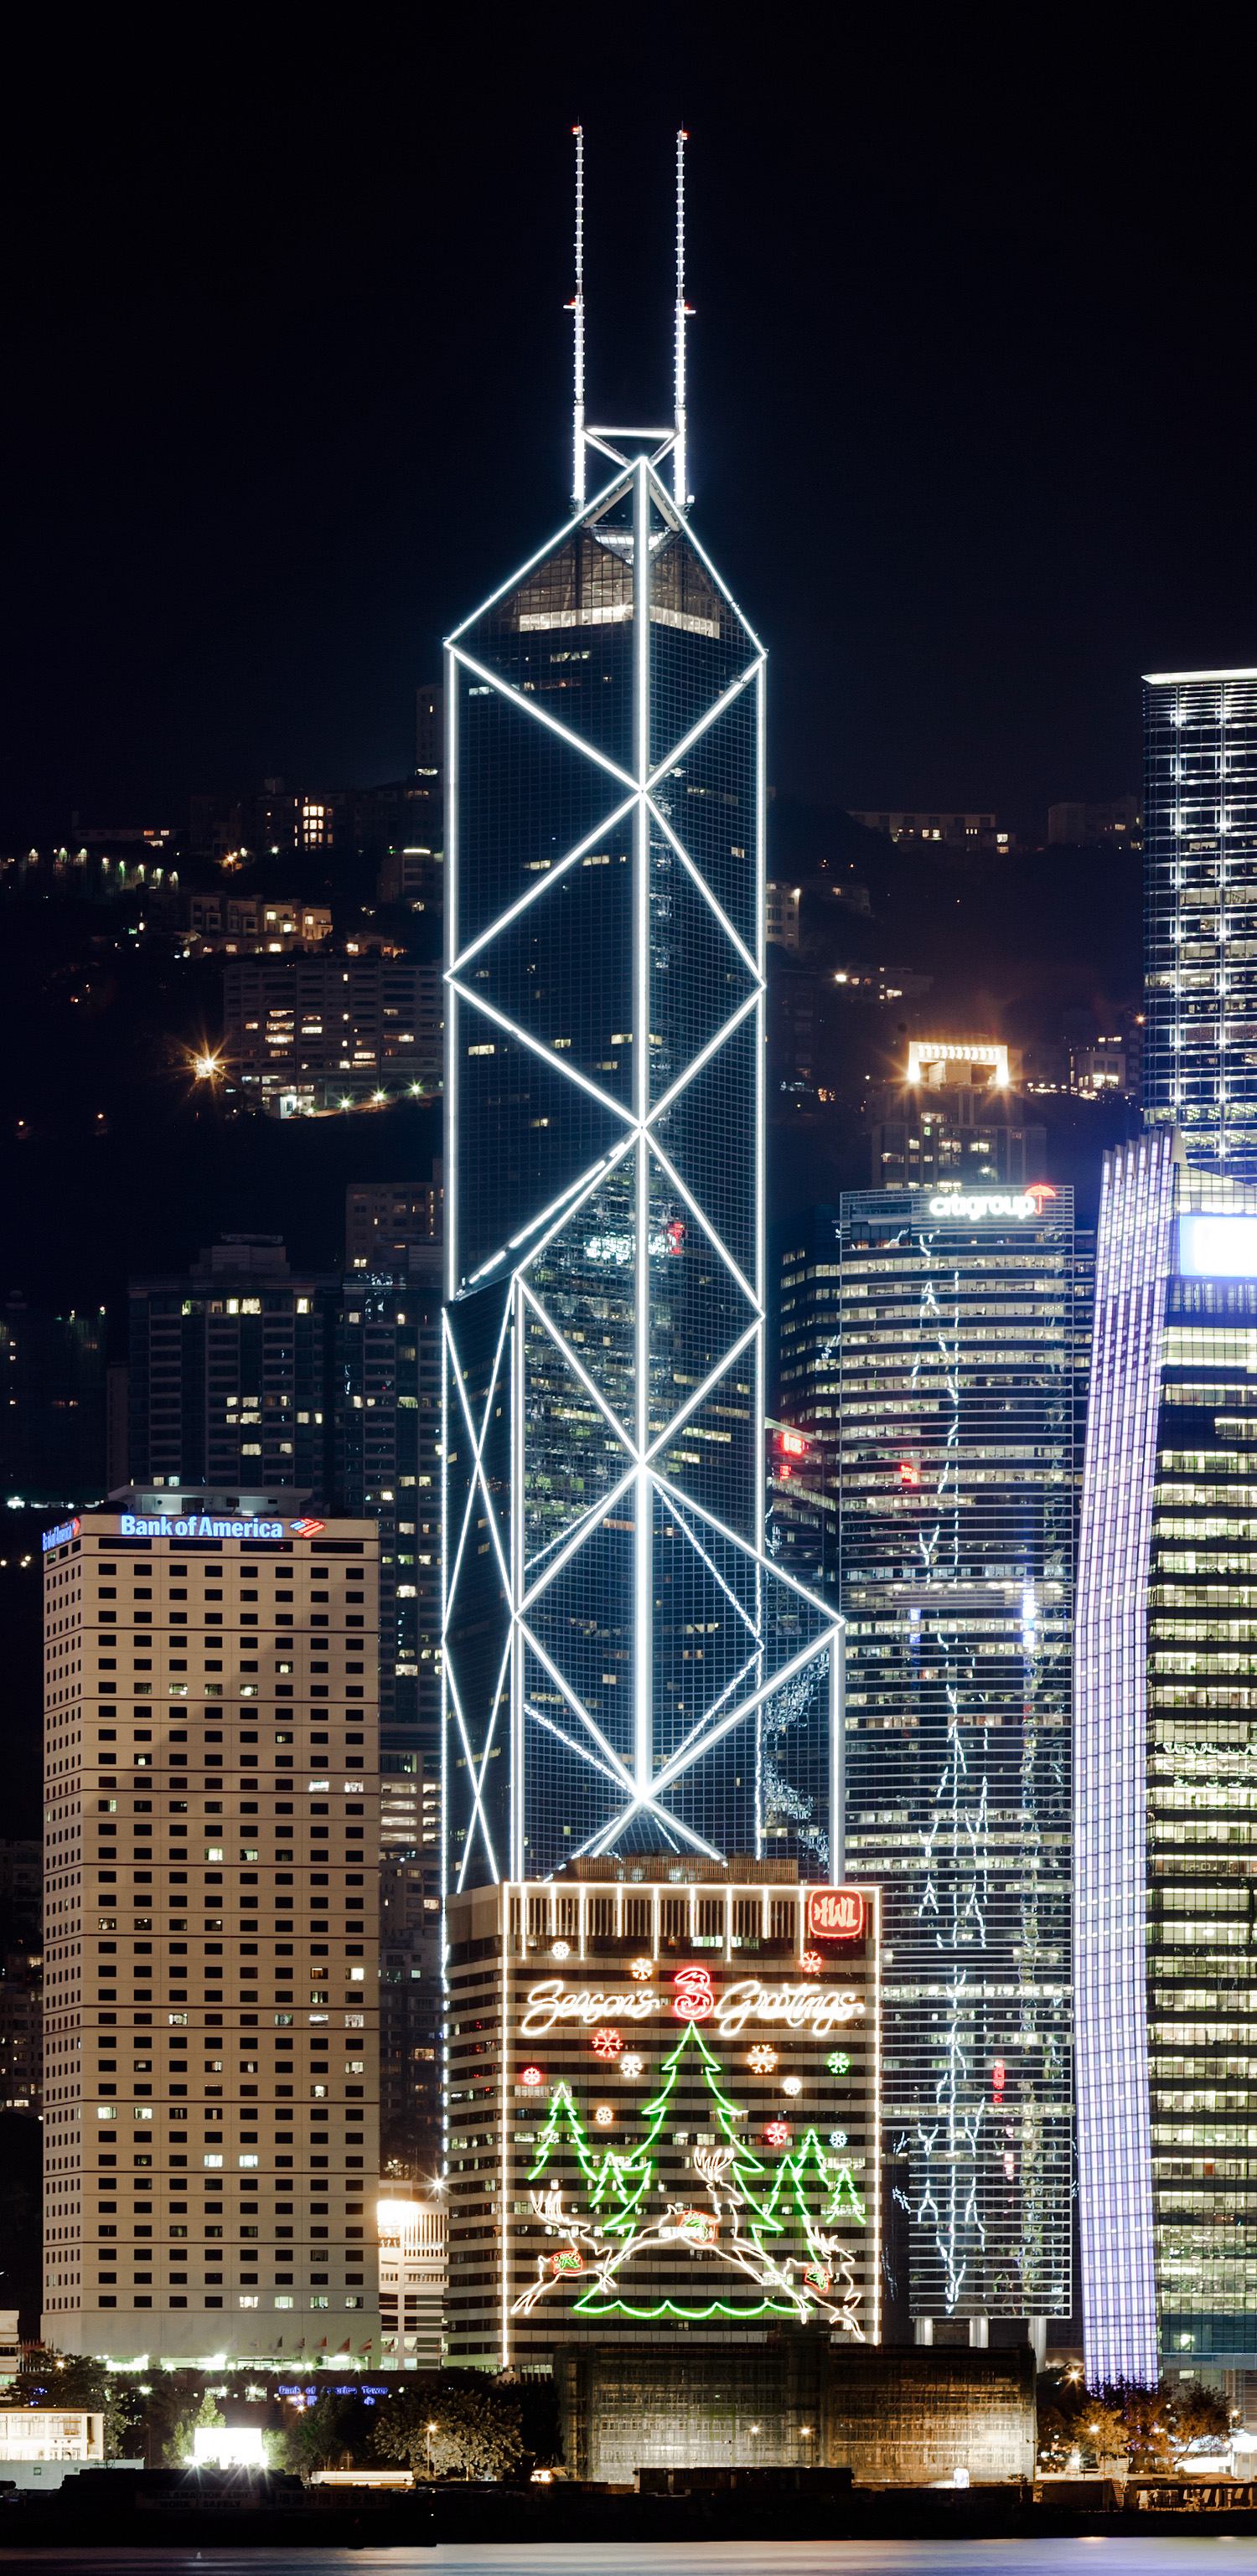 Bank of China Tower, Hong Kong - View from Kowloon. © Mathias Beinling